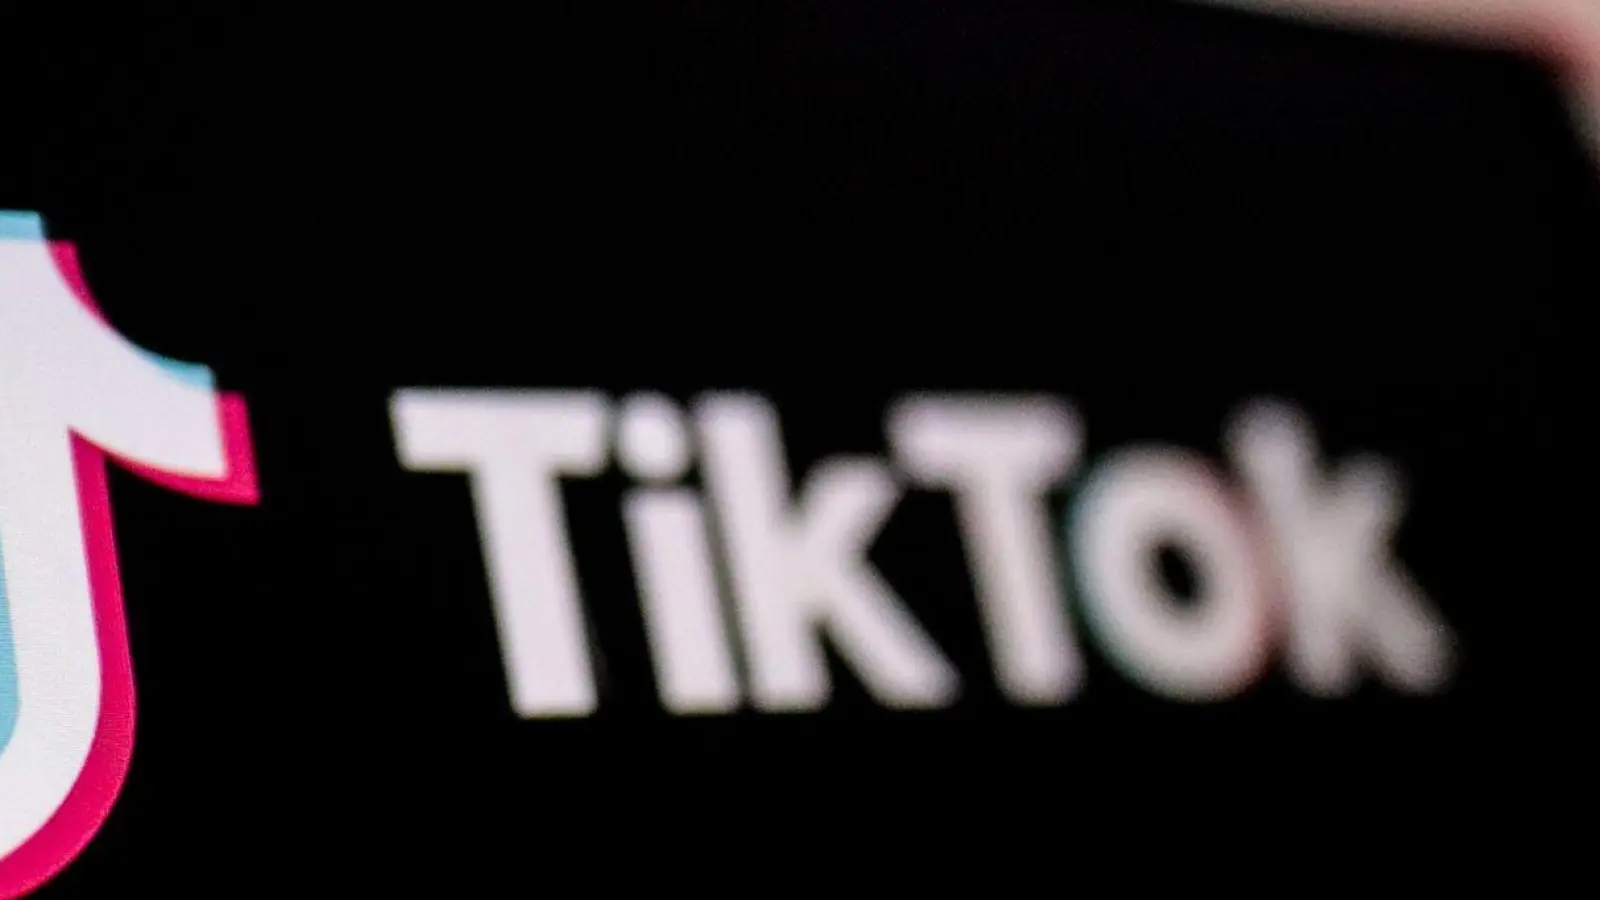 Bei TikTok wurden seit der Einführung der Meldepflicht knapp 508 Millionen Beiträge gemeldet und mehr als 348 Millionen Beiträge gelöscht. (Foto: Hasan Mrad/IMAGESLIVE via ZUMA Press Wire/dpa)